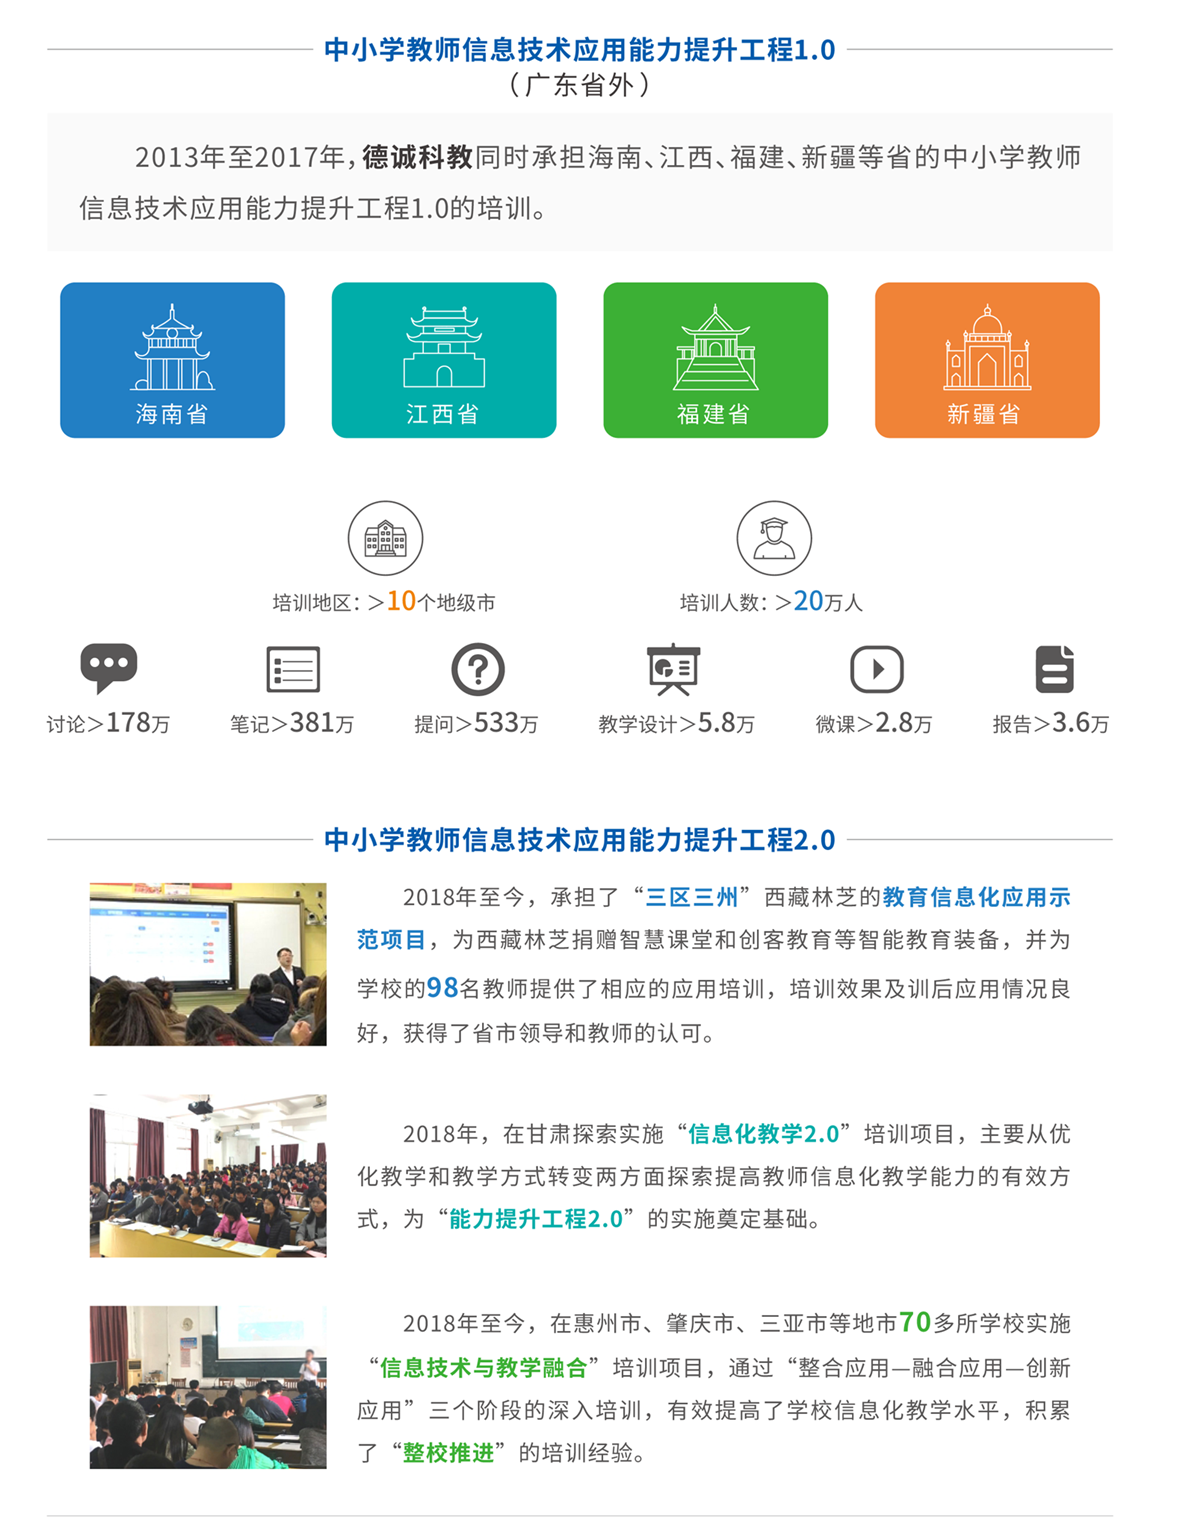 彩简--中小学教师信息技术应用能力提升工程2.0-2.png